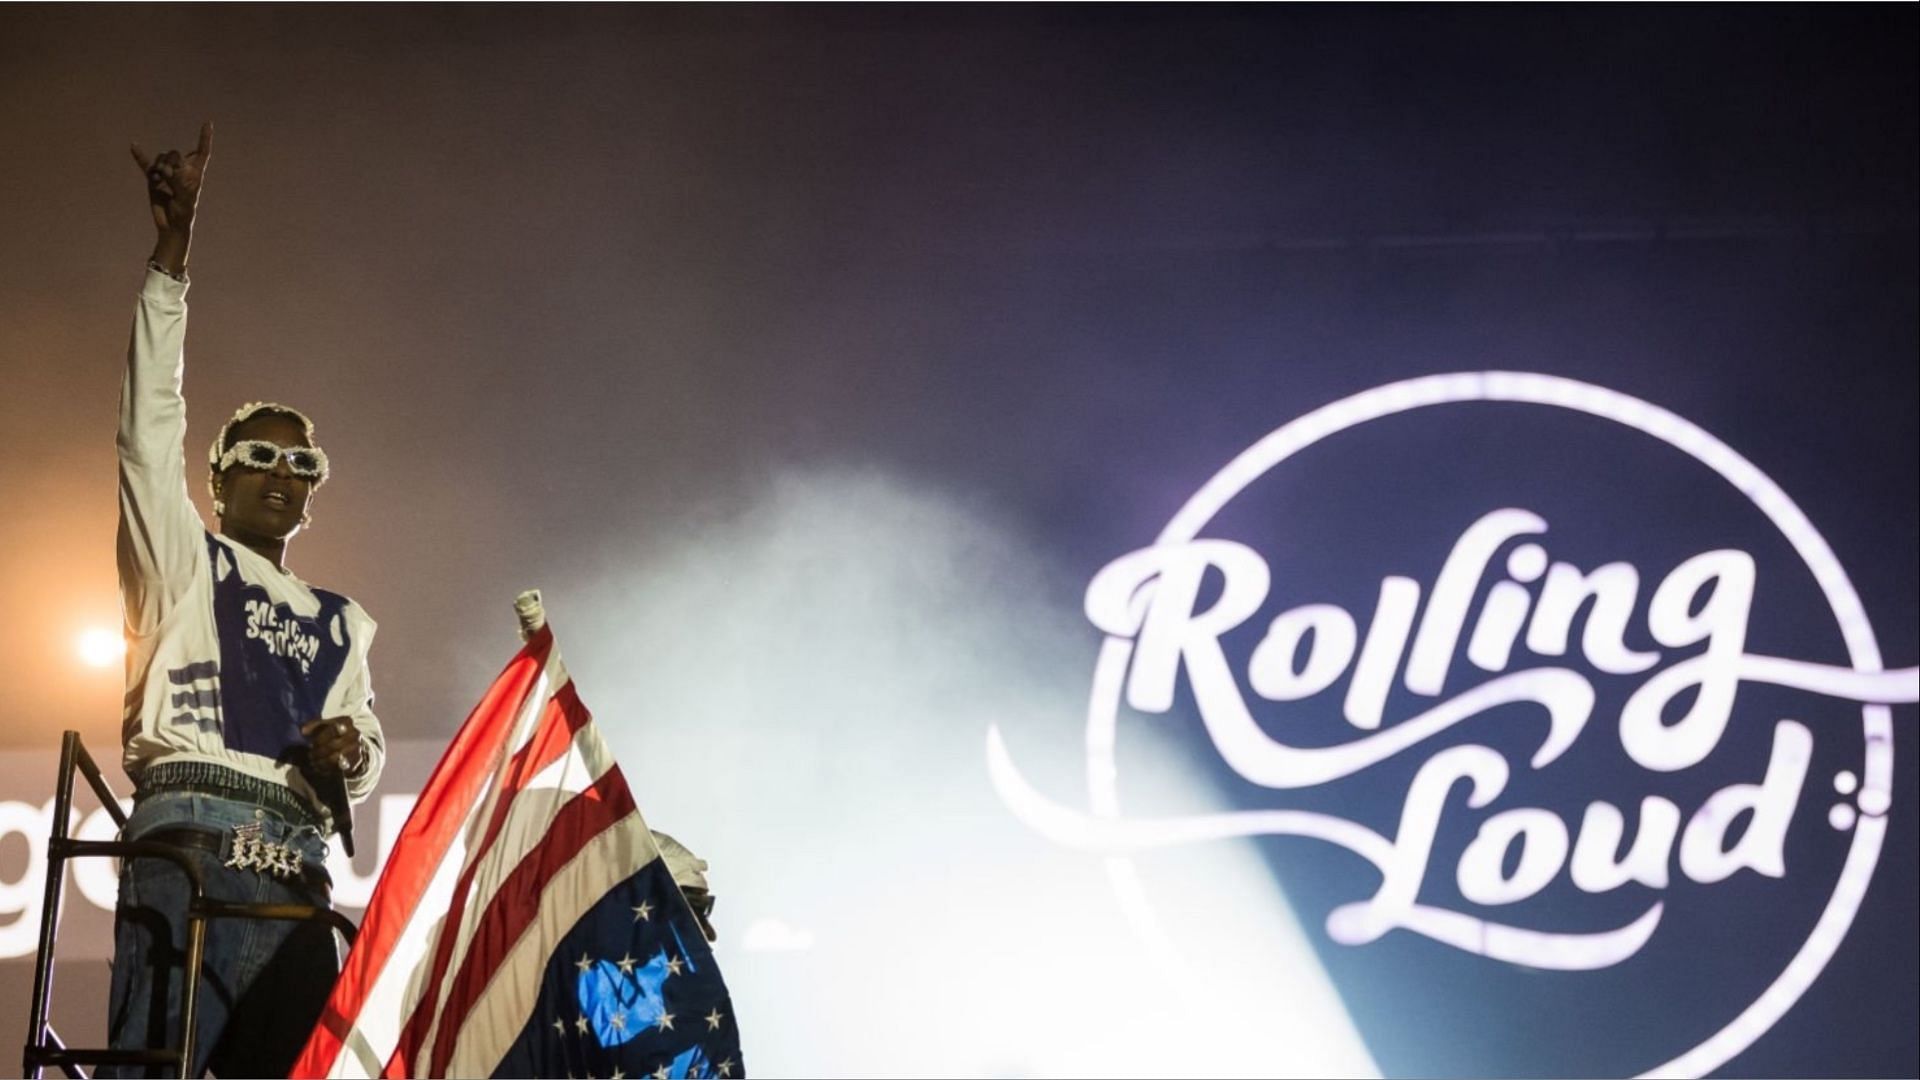 ASAP Rocky Premiered Song Rolling Loud Miami: Travis Scott